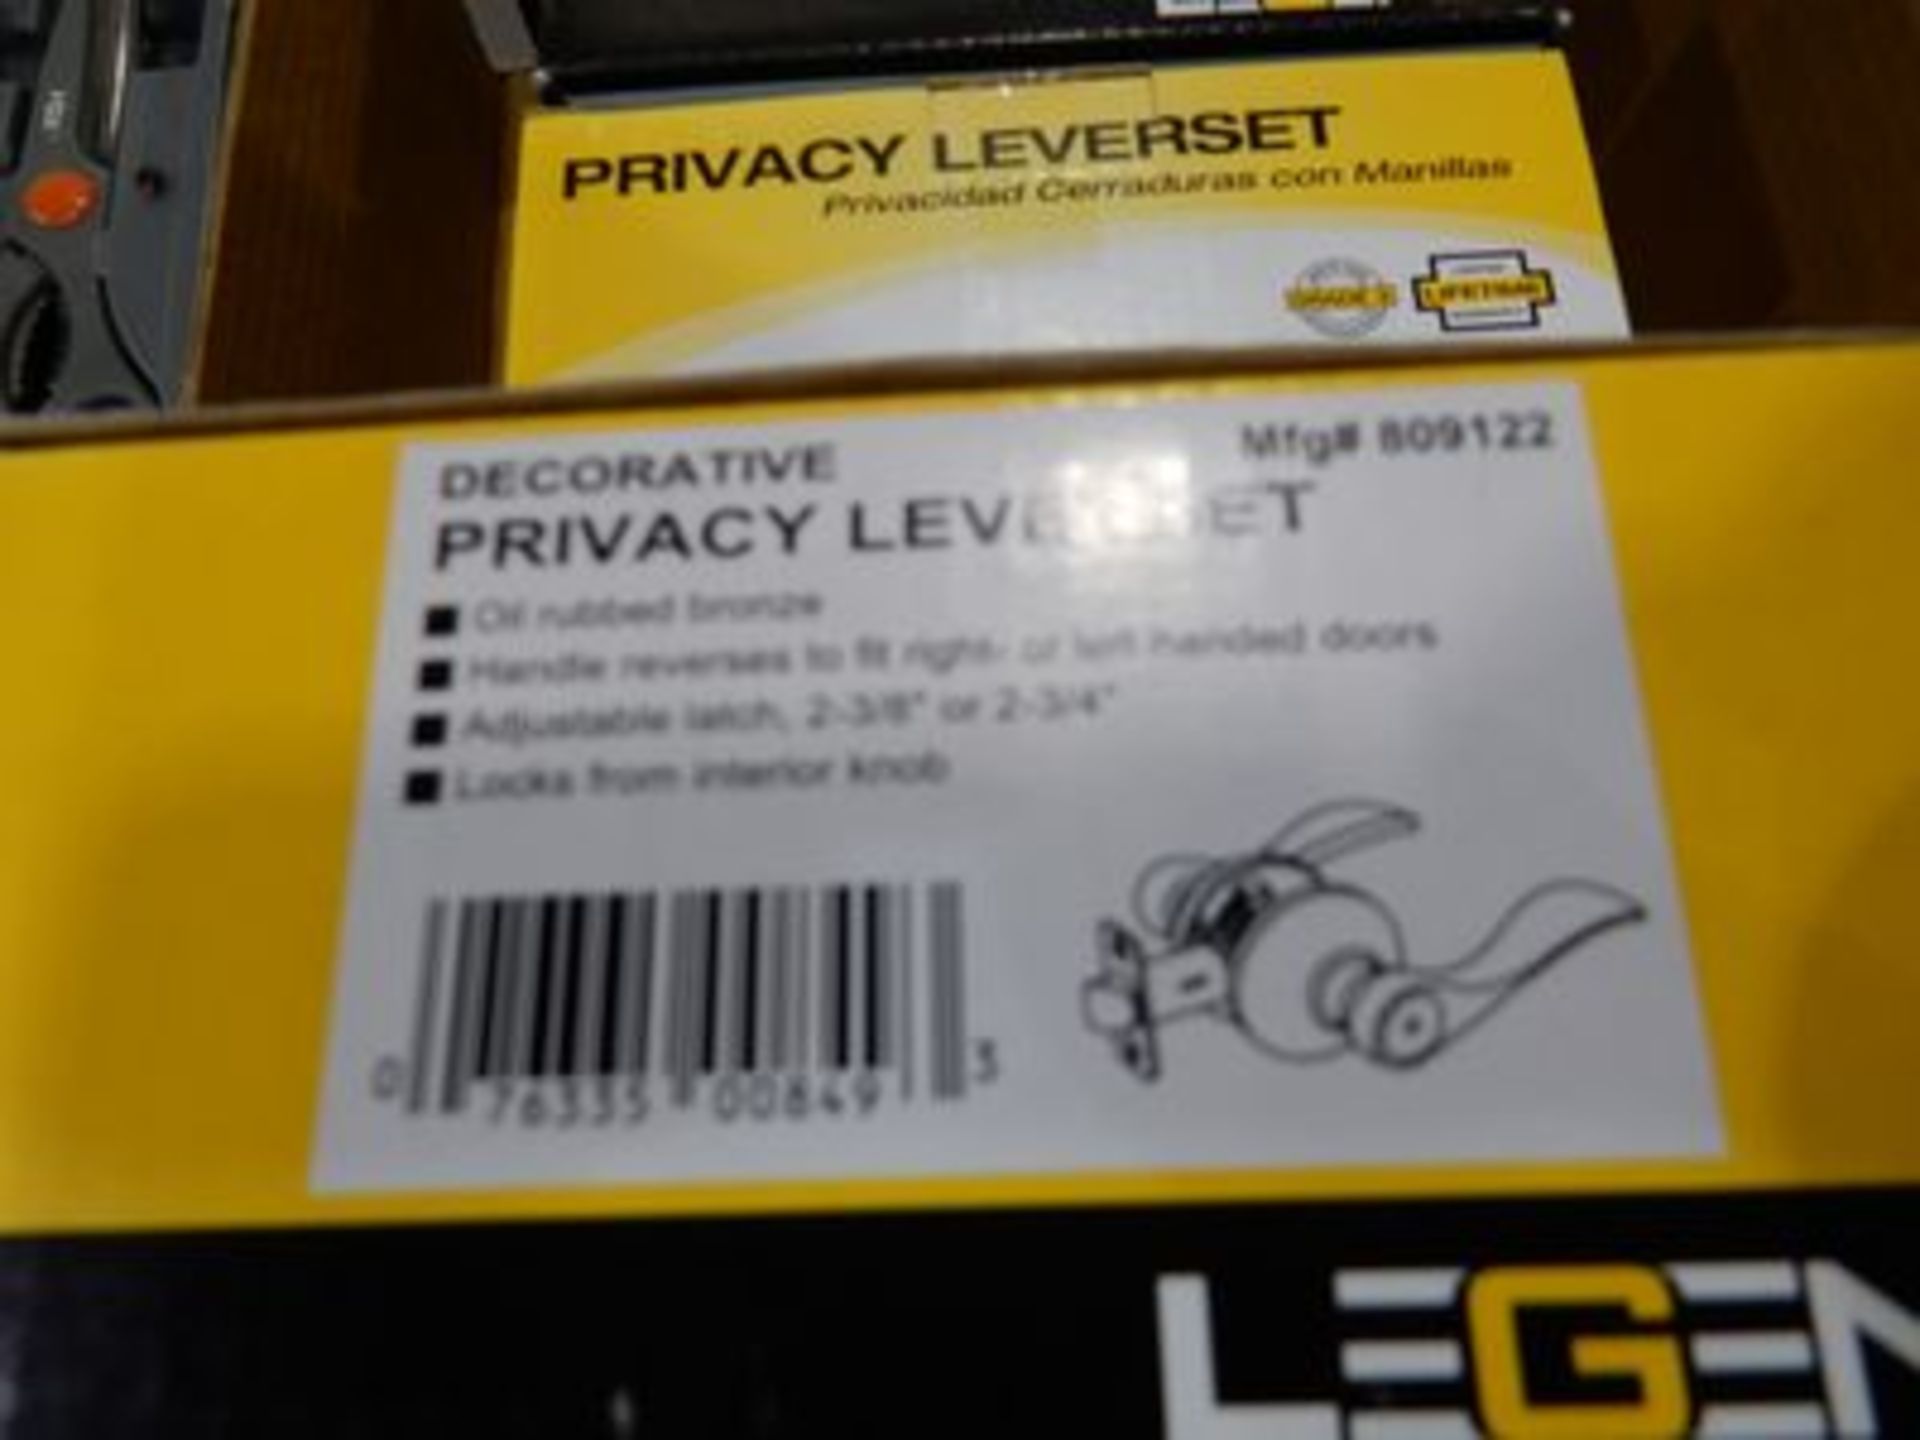 LEGEND PRIVACY LEVERSET NEW DOOR HANDKES - Image 2 of 2